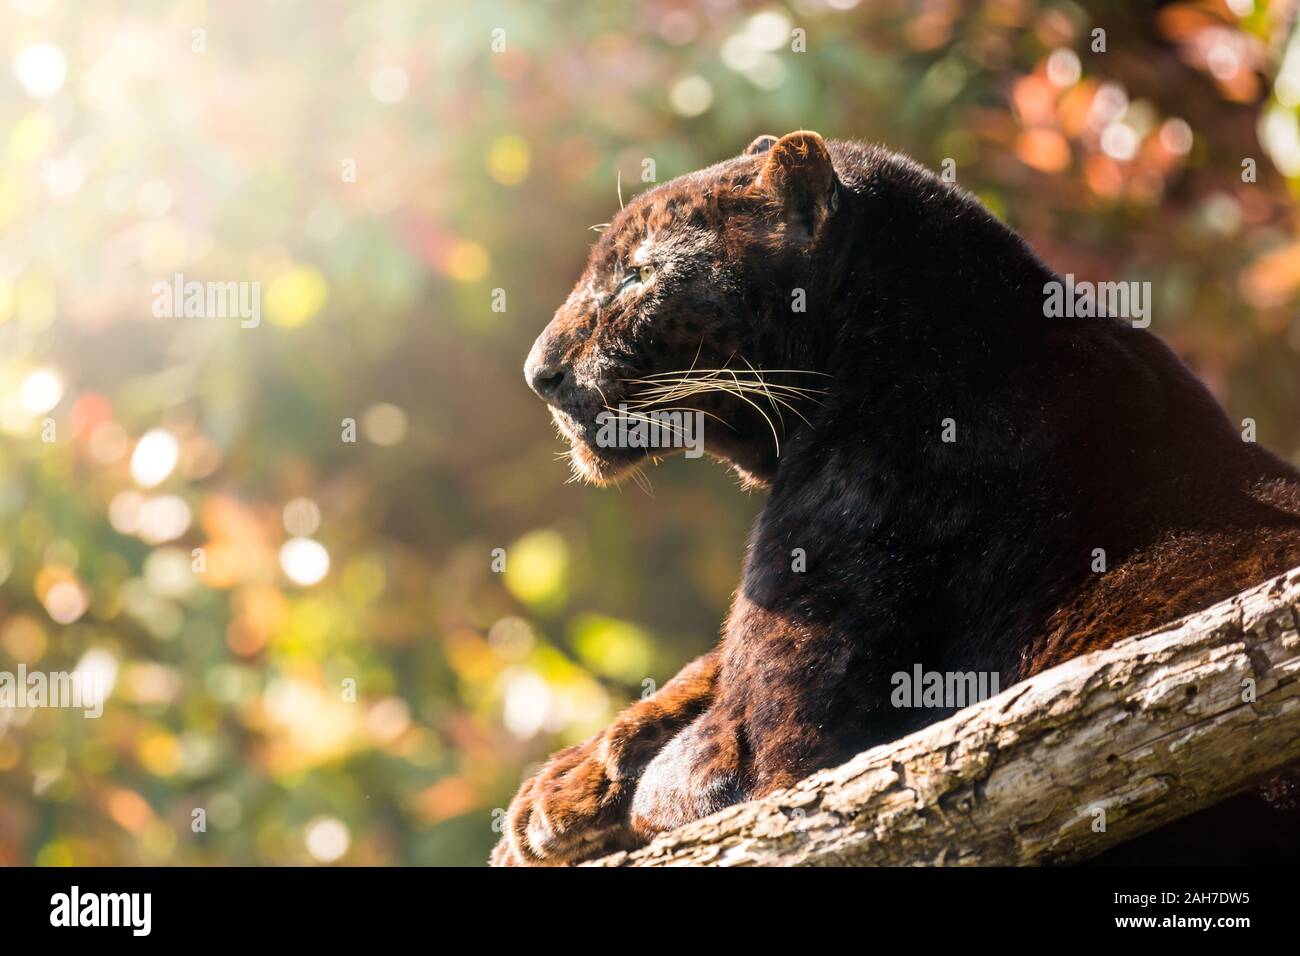 Nahaufnahme eines schwarzen Panthers, der auf einem Ast sitzt und im frühen Morgenlicht seitwärts schaut, vor einem grünen Bokeh-Hintergrund Stockfoto